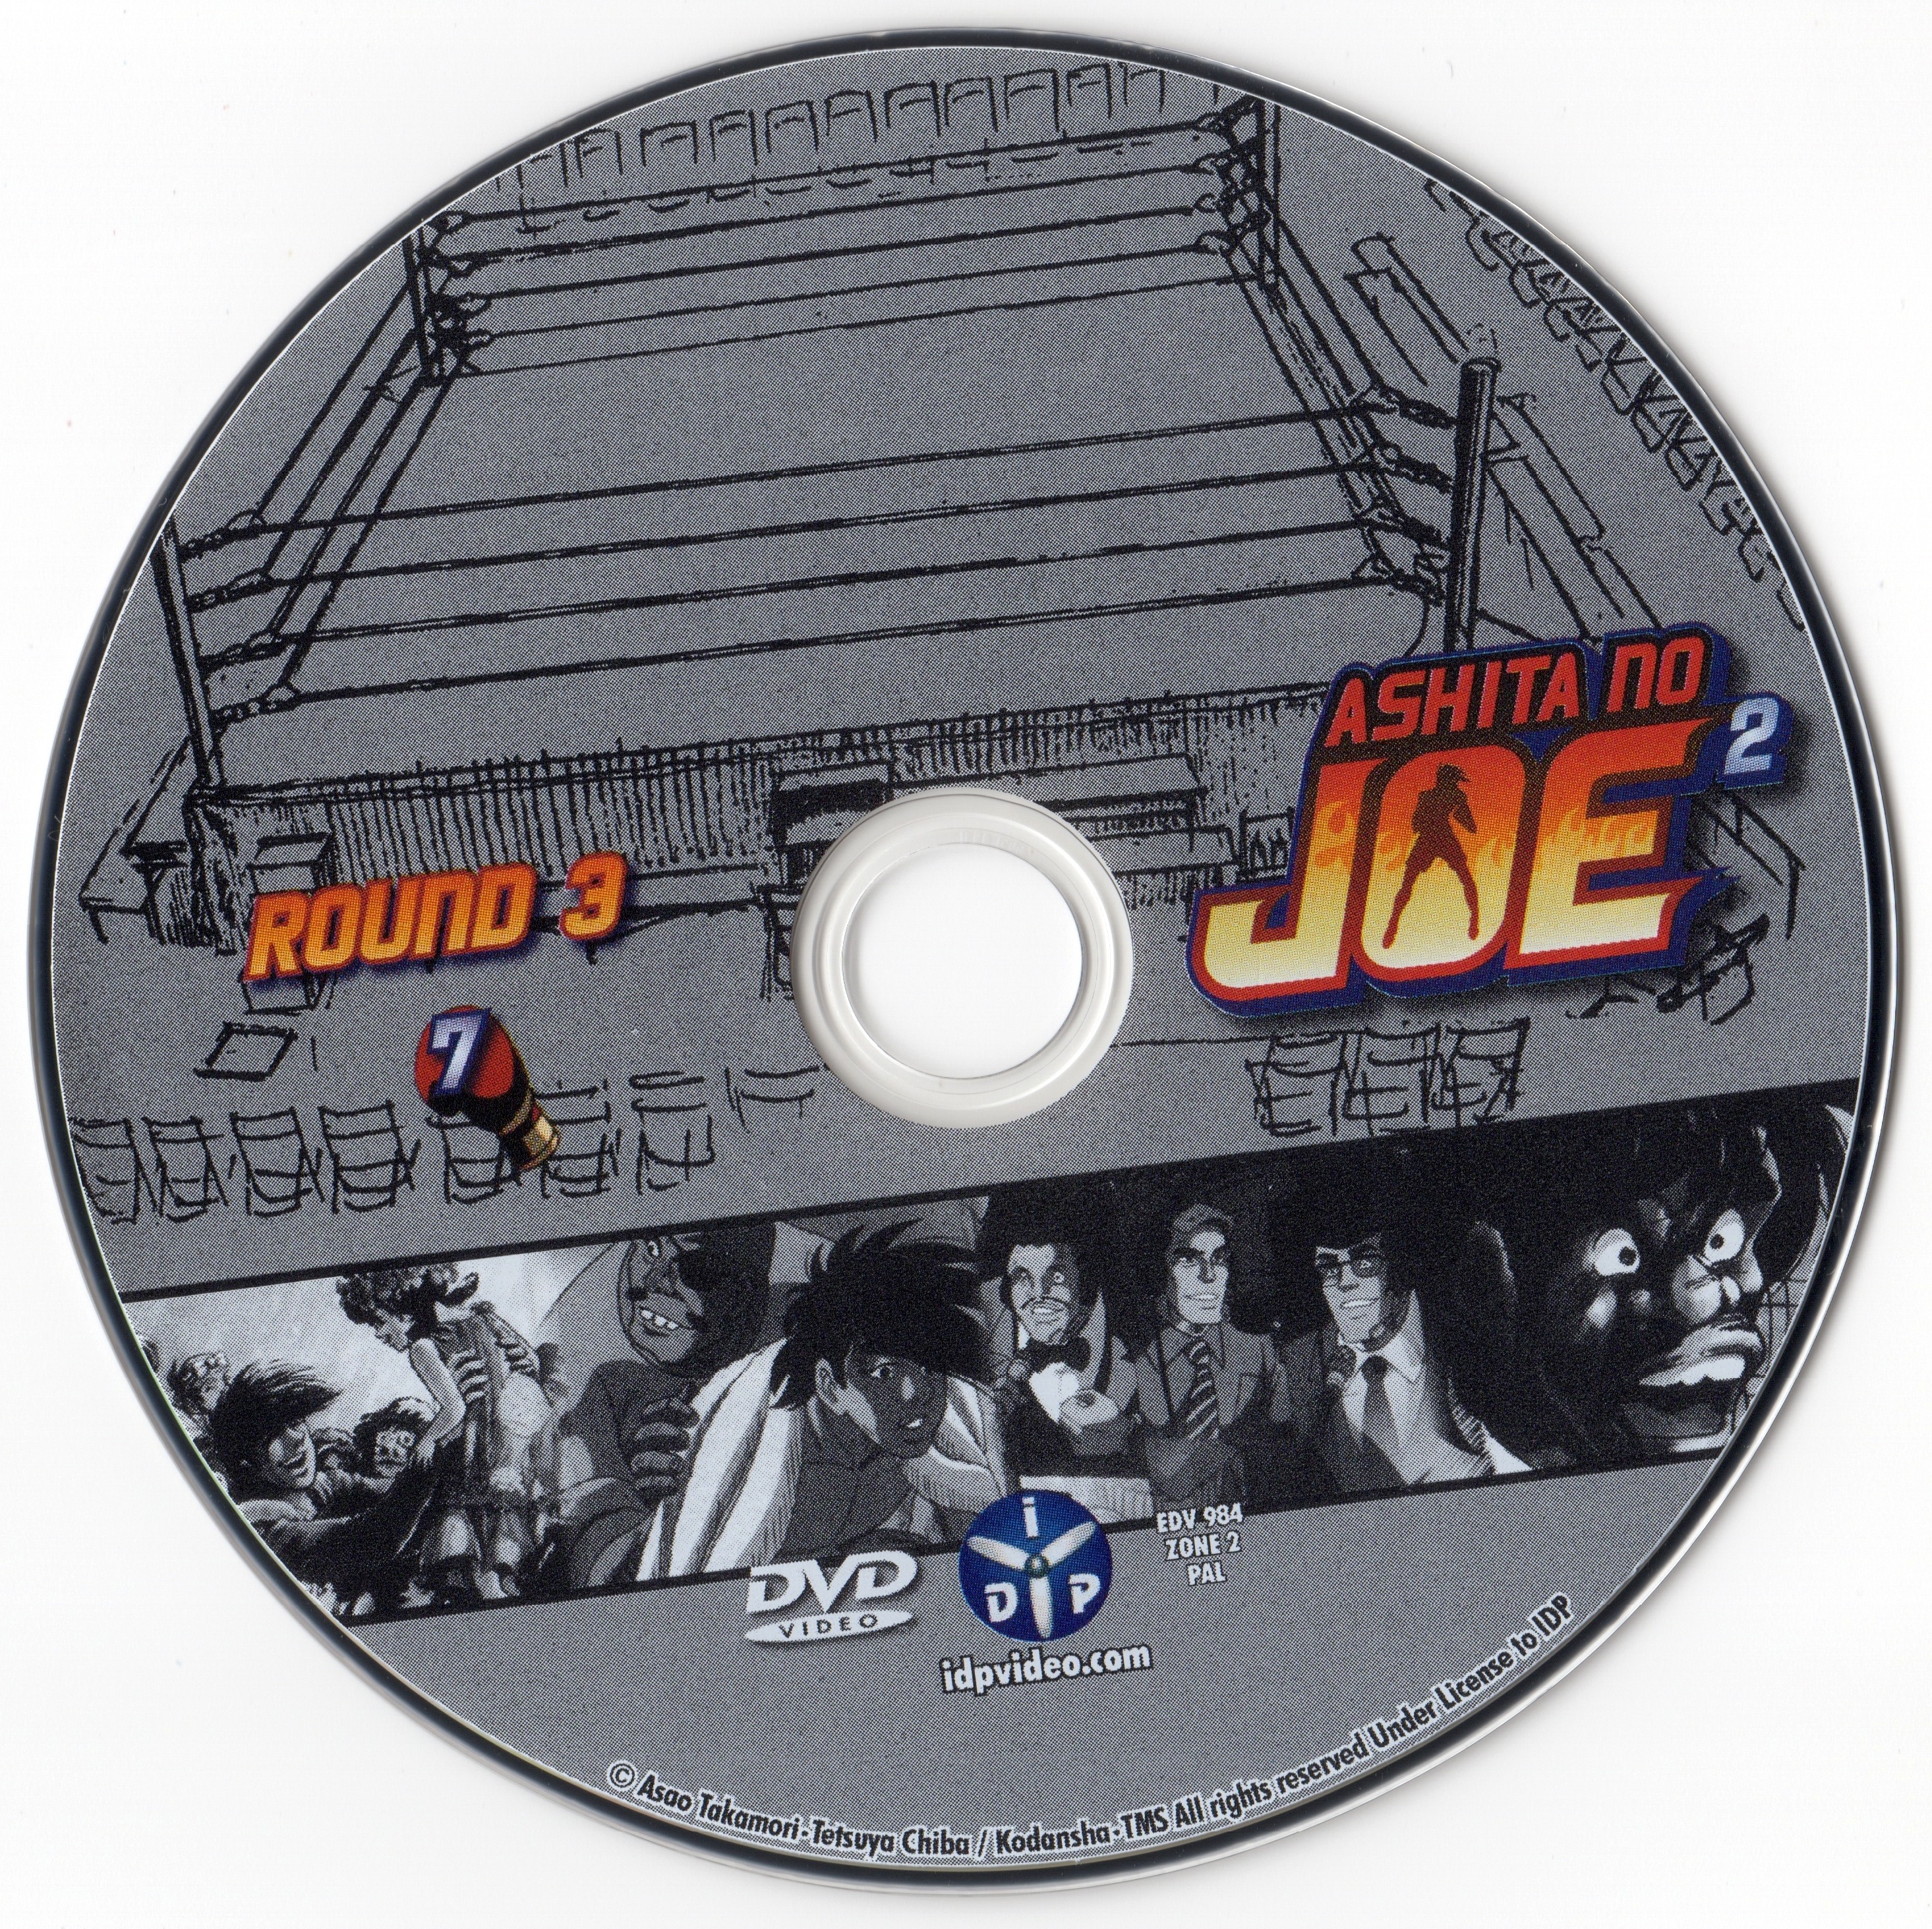 Ashita No Joe 2 Round 1 DVD 7